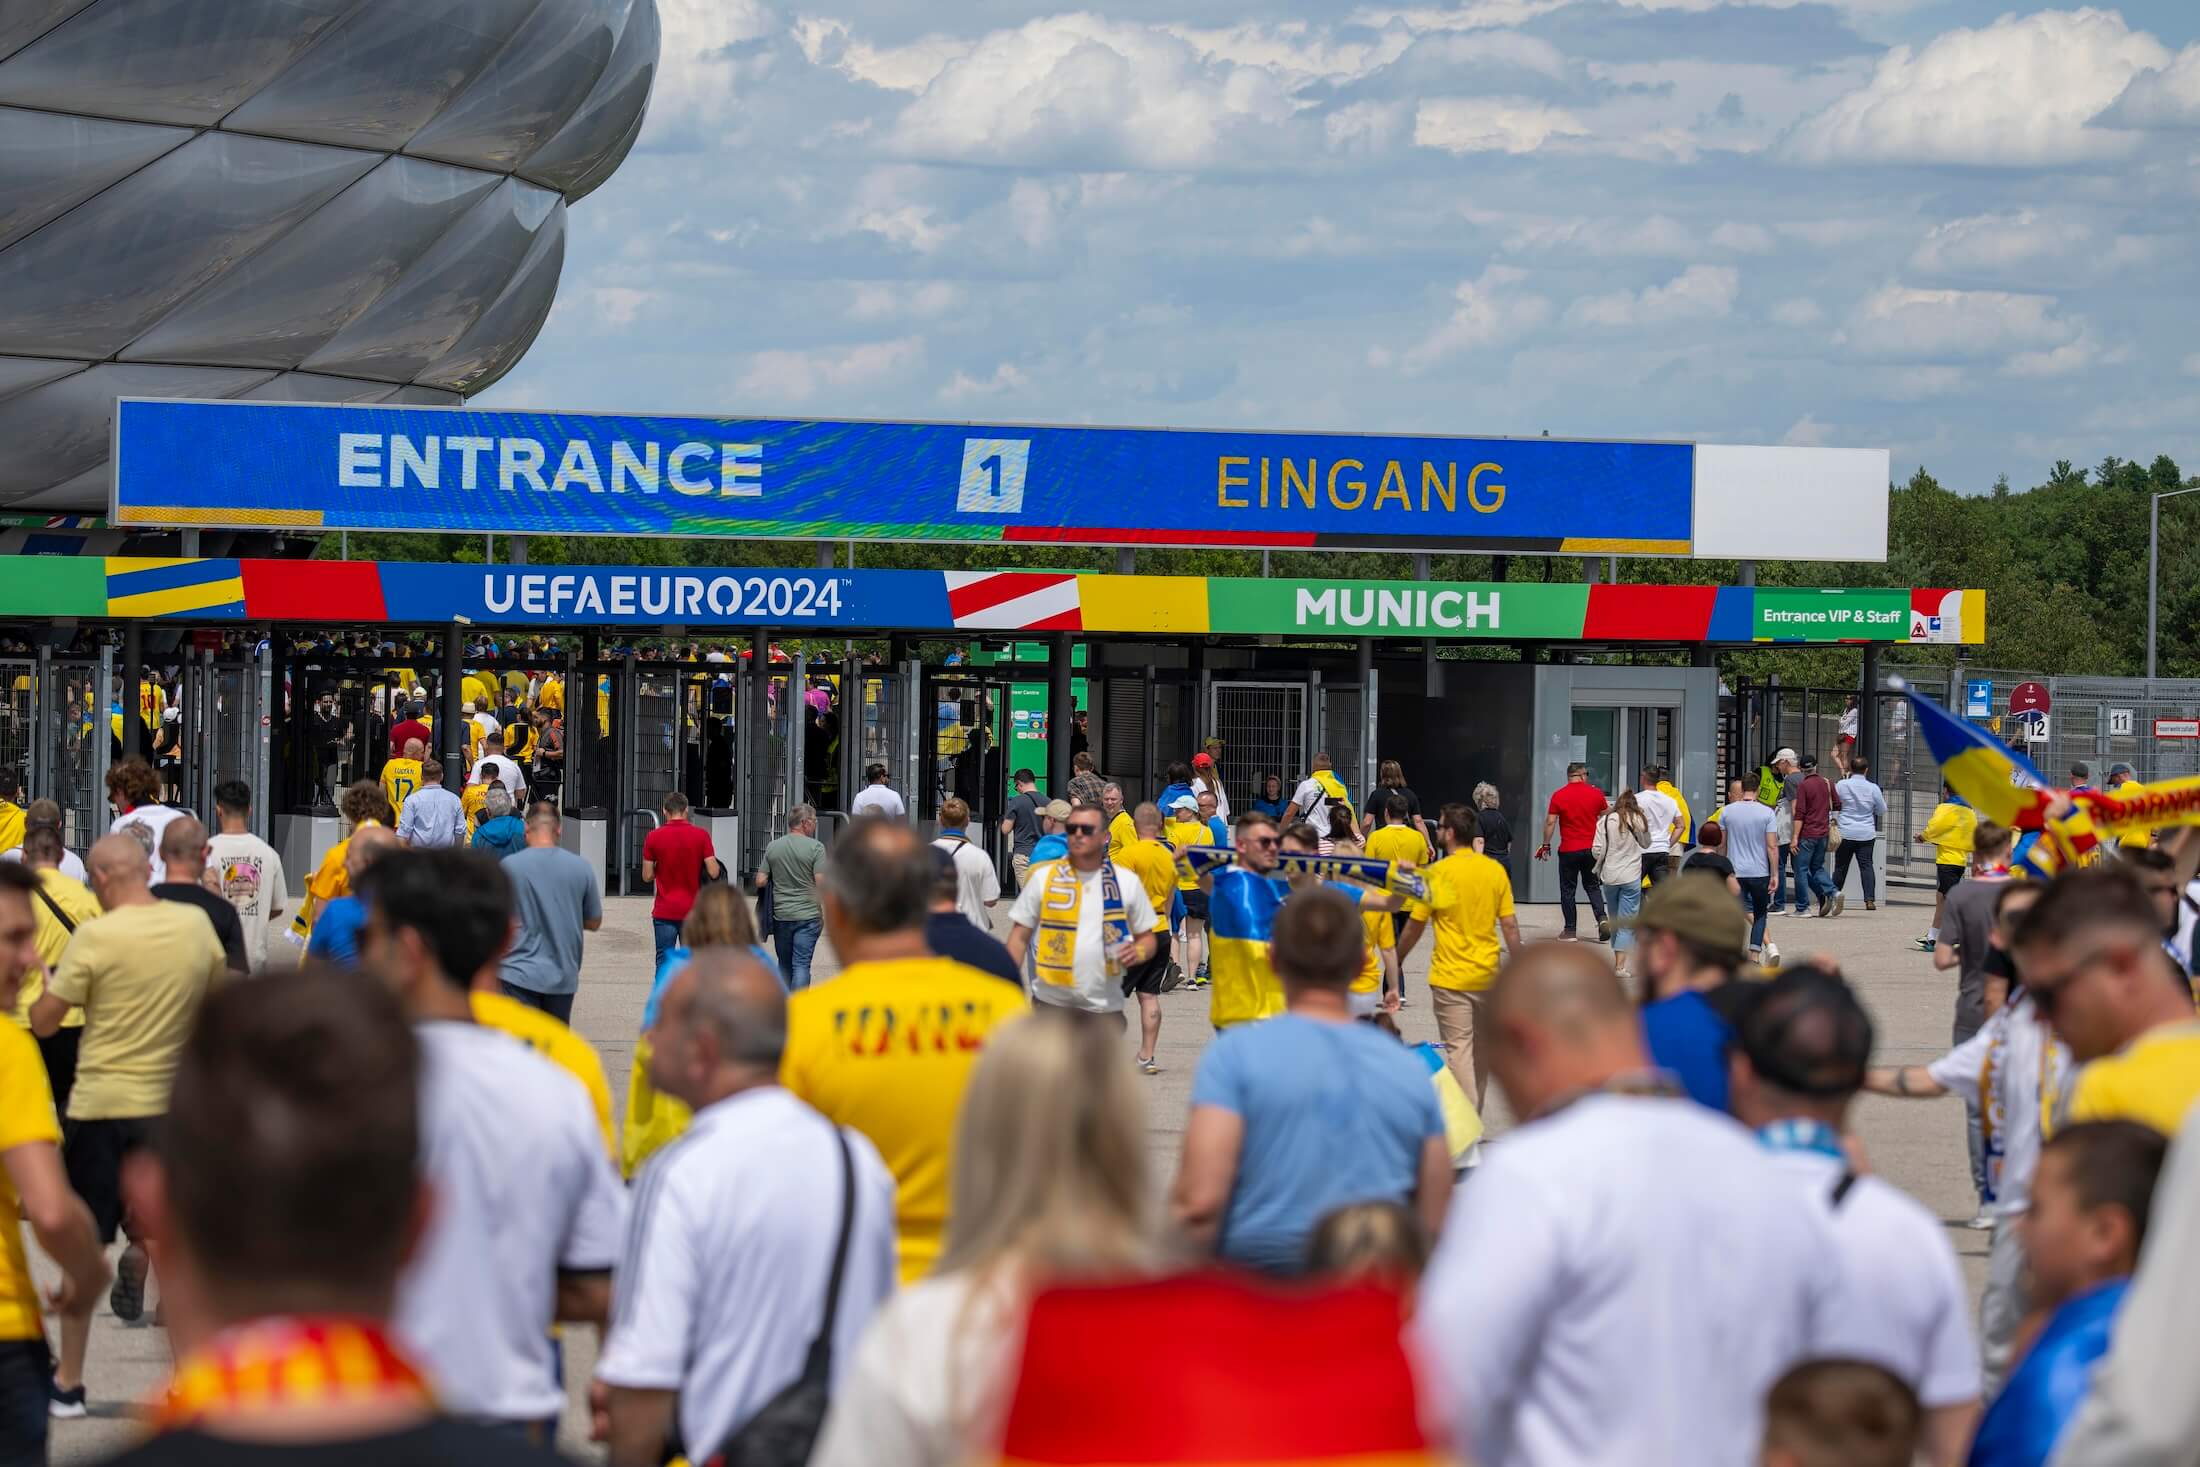 Eingangsbereich der Allianz Arena in München. Fans in gelben Trikots strömen zum Stadion, die Tickets für die EM 2024 bekommen haben.